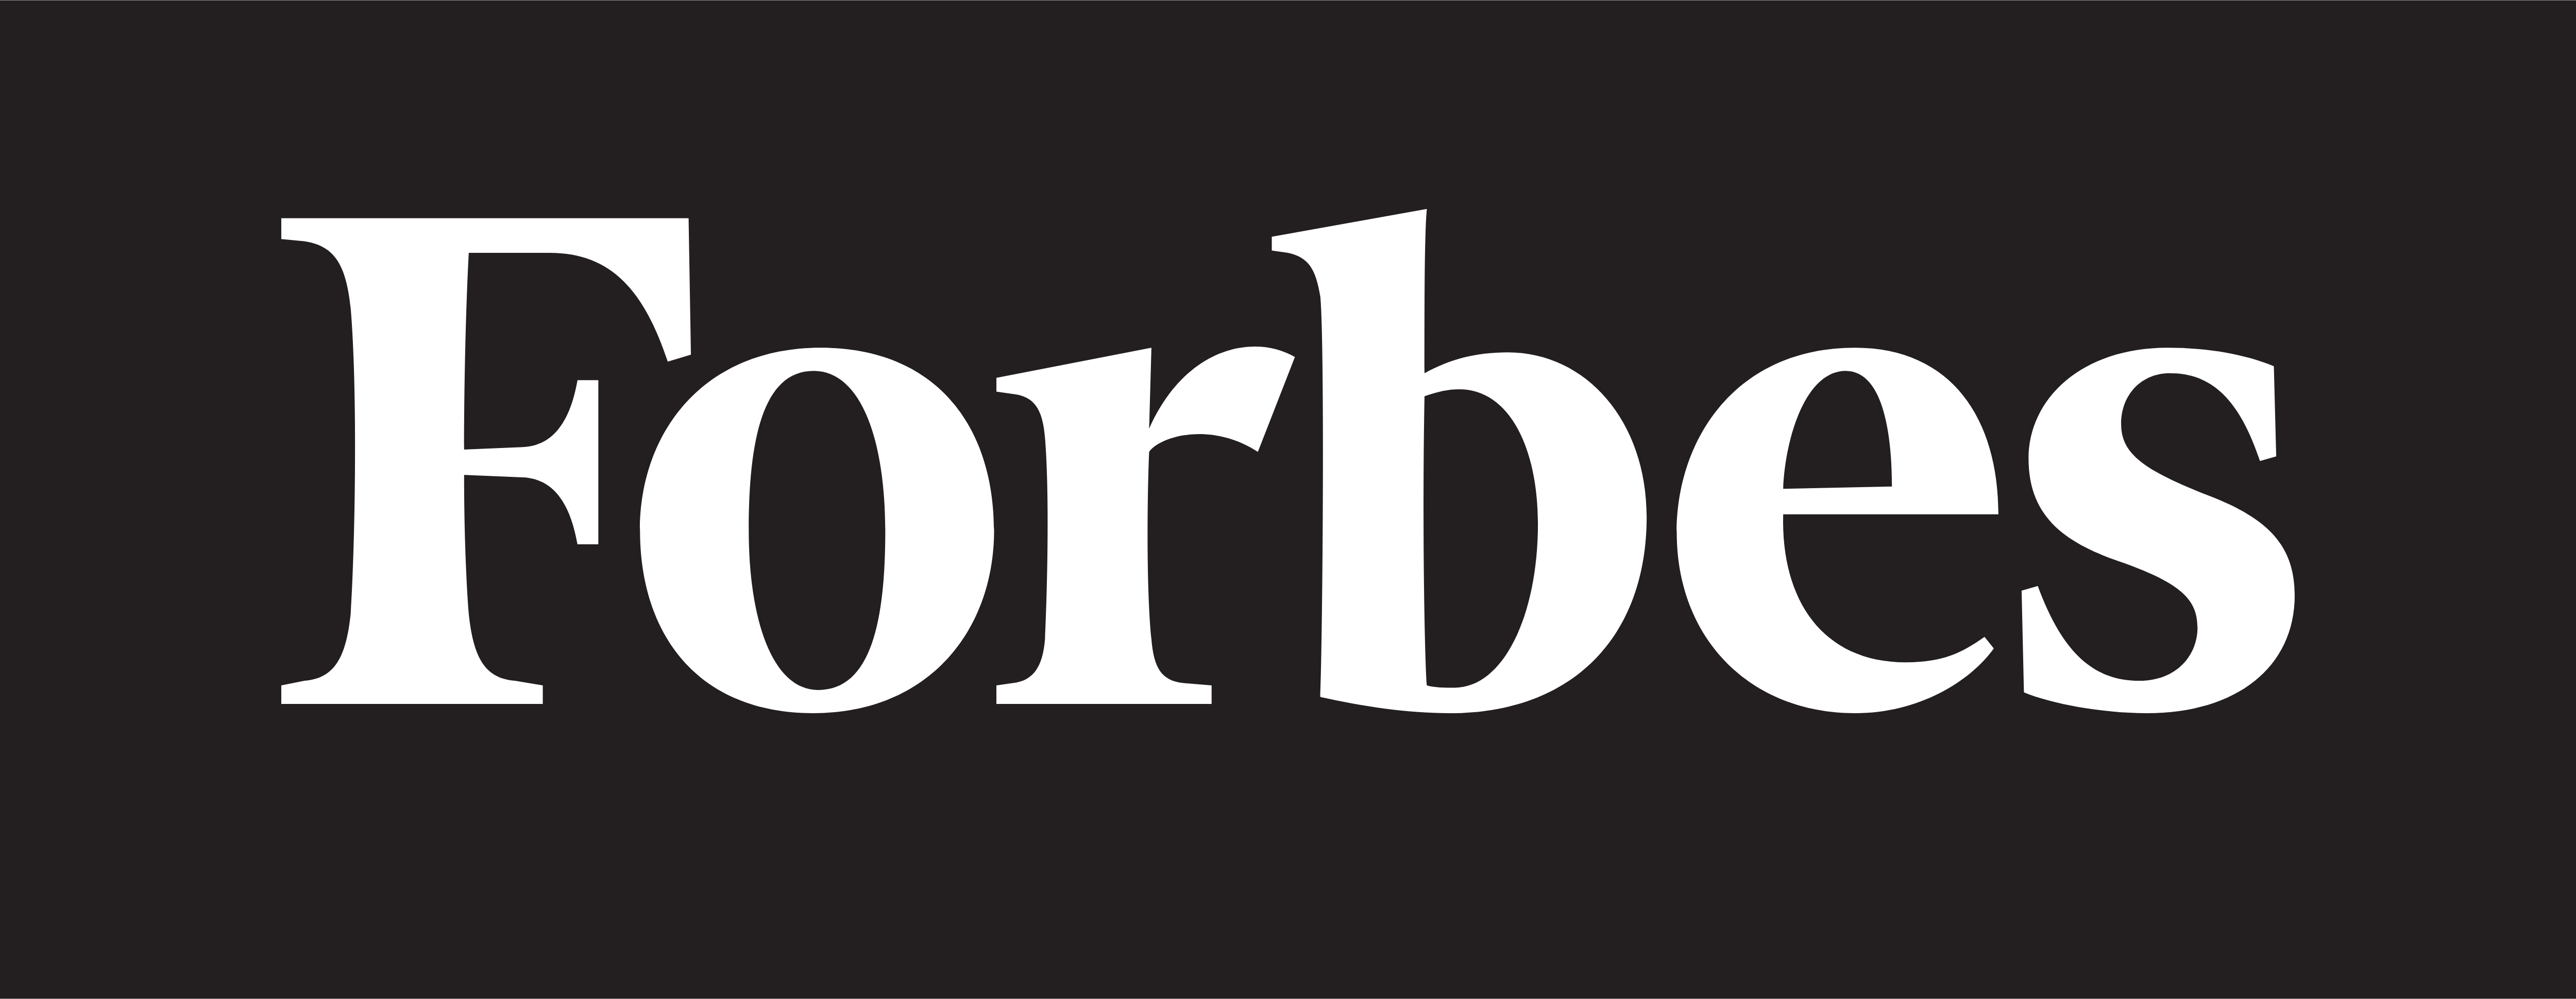 Forbes – Last ned logoer